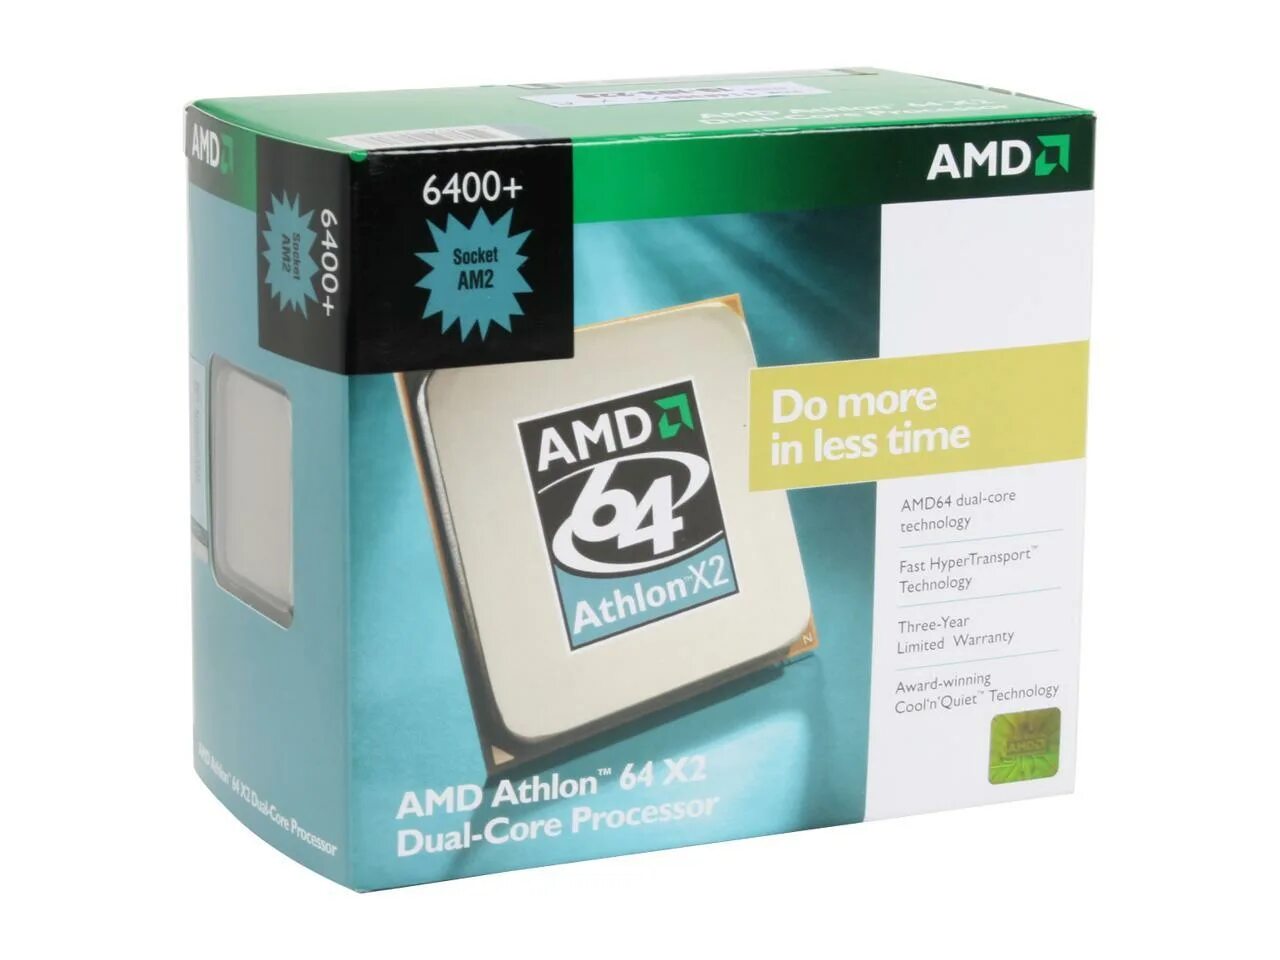 6400 сокет. AMD Athlon 64 x2 6400+. AMD Athlon x2 Dual Core. AMD Athlon 64 x2 сокет. AMD Athlon 64 x2 Dual Core 6400+.